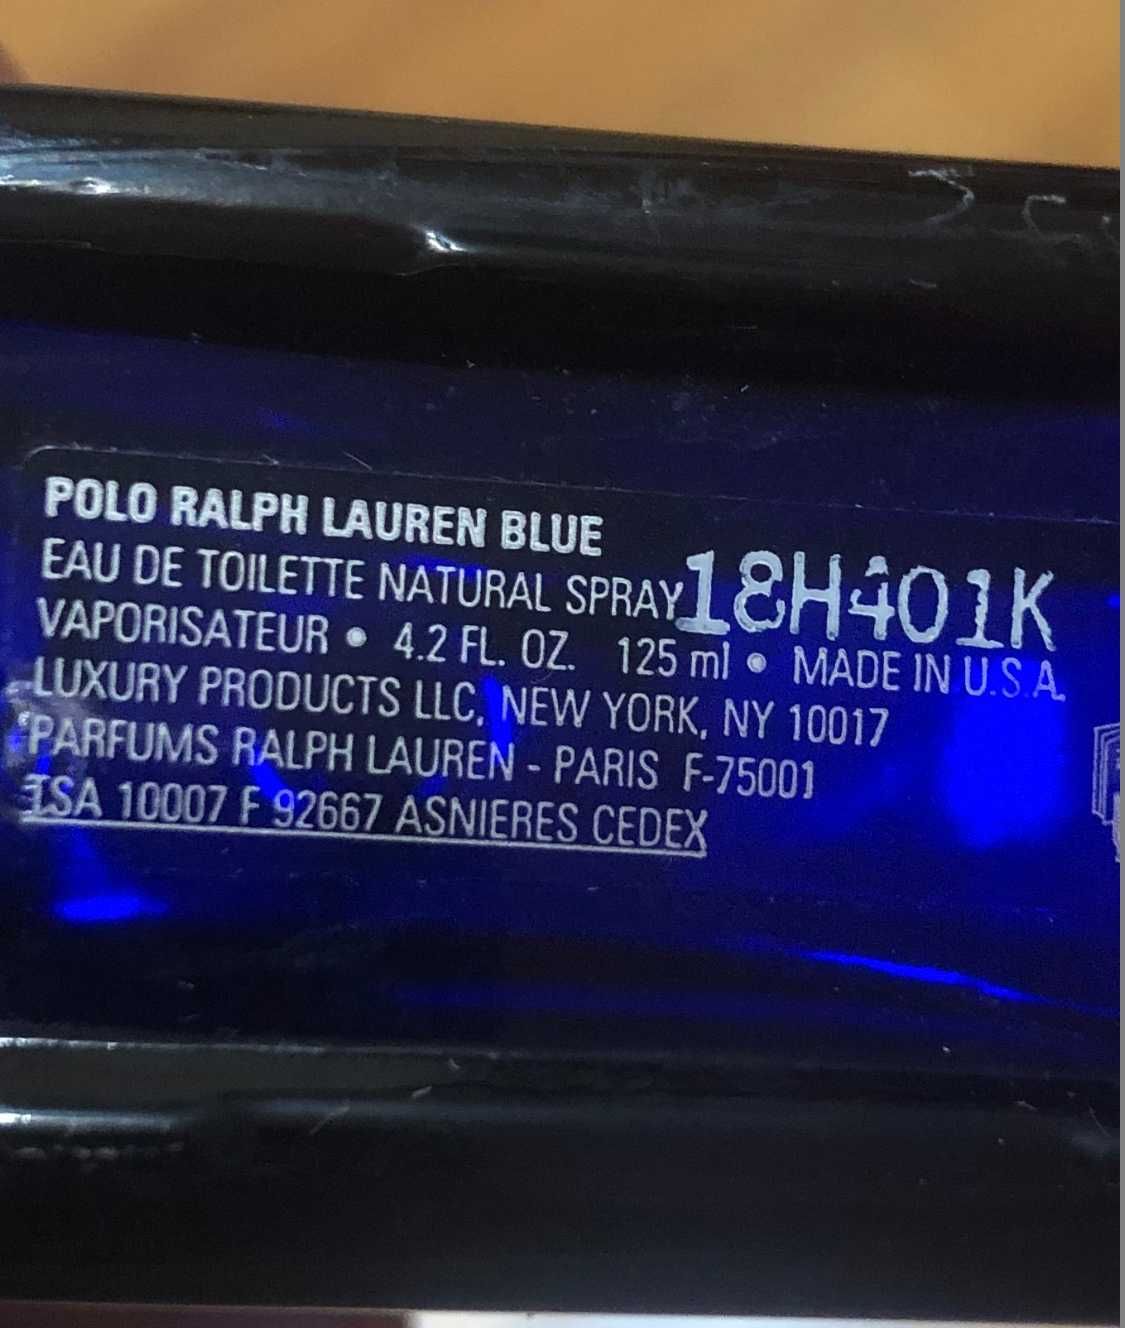 Polo ralph lauren blue 125ml Eau de Toilette Spray